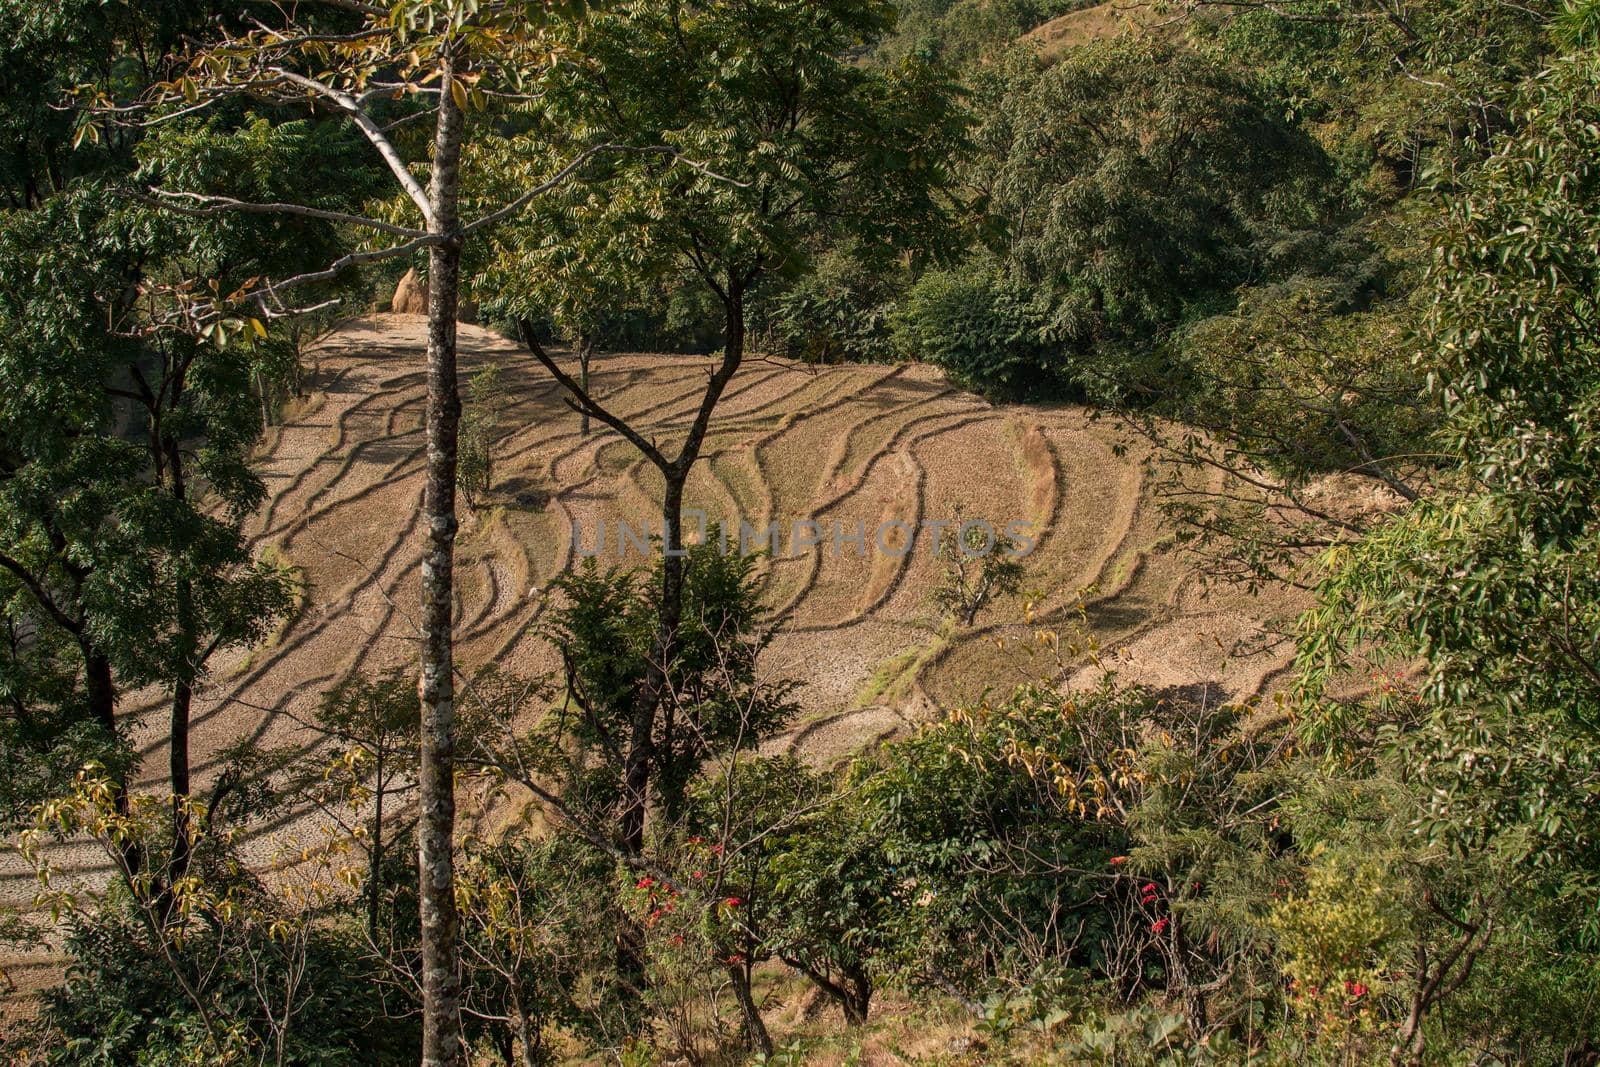 Terraced rice fields on a hillside in Nepal